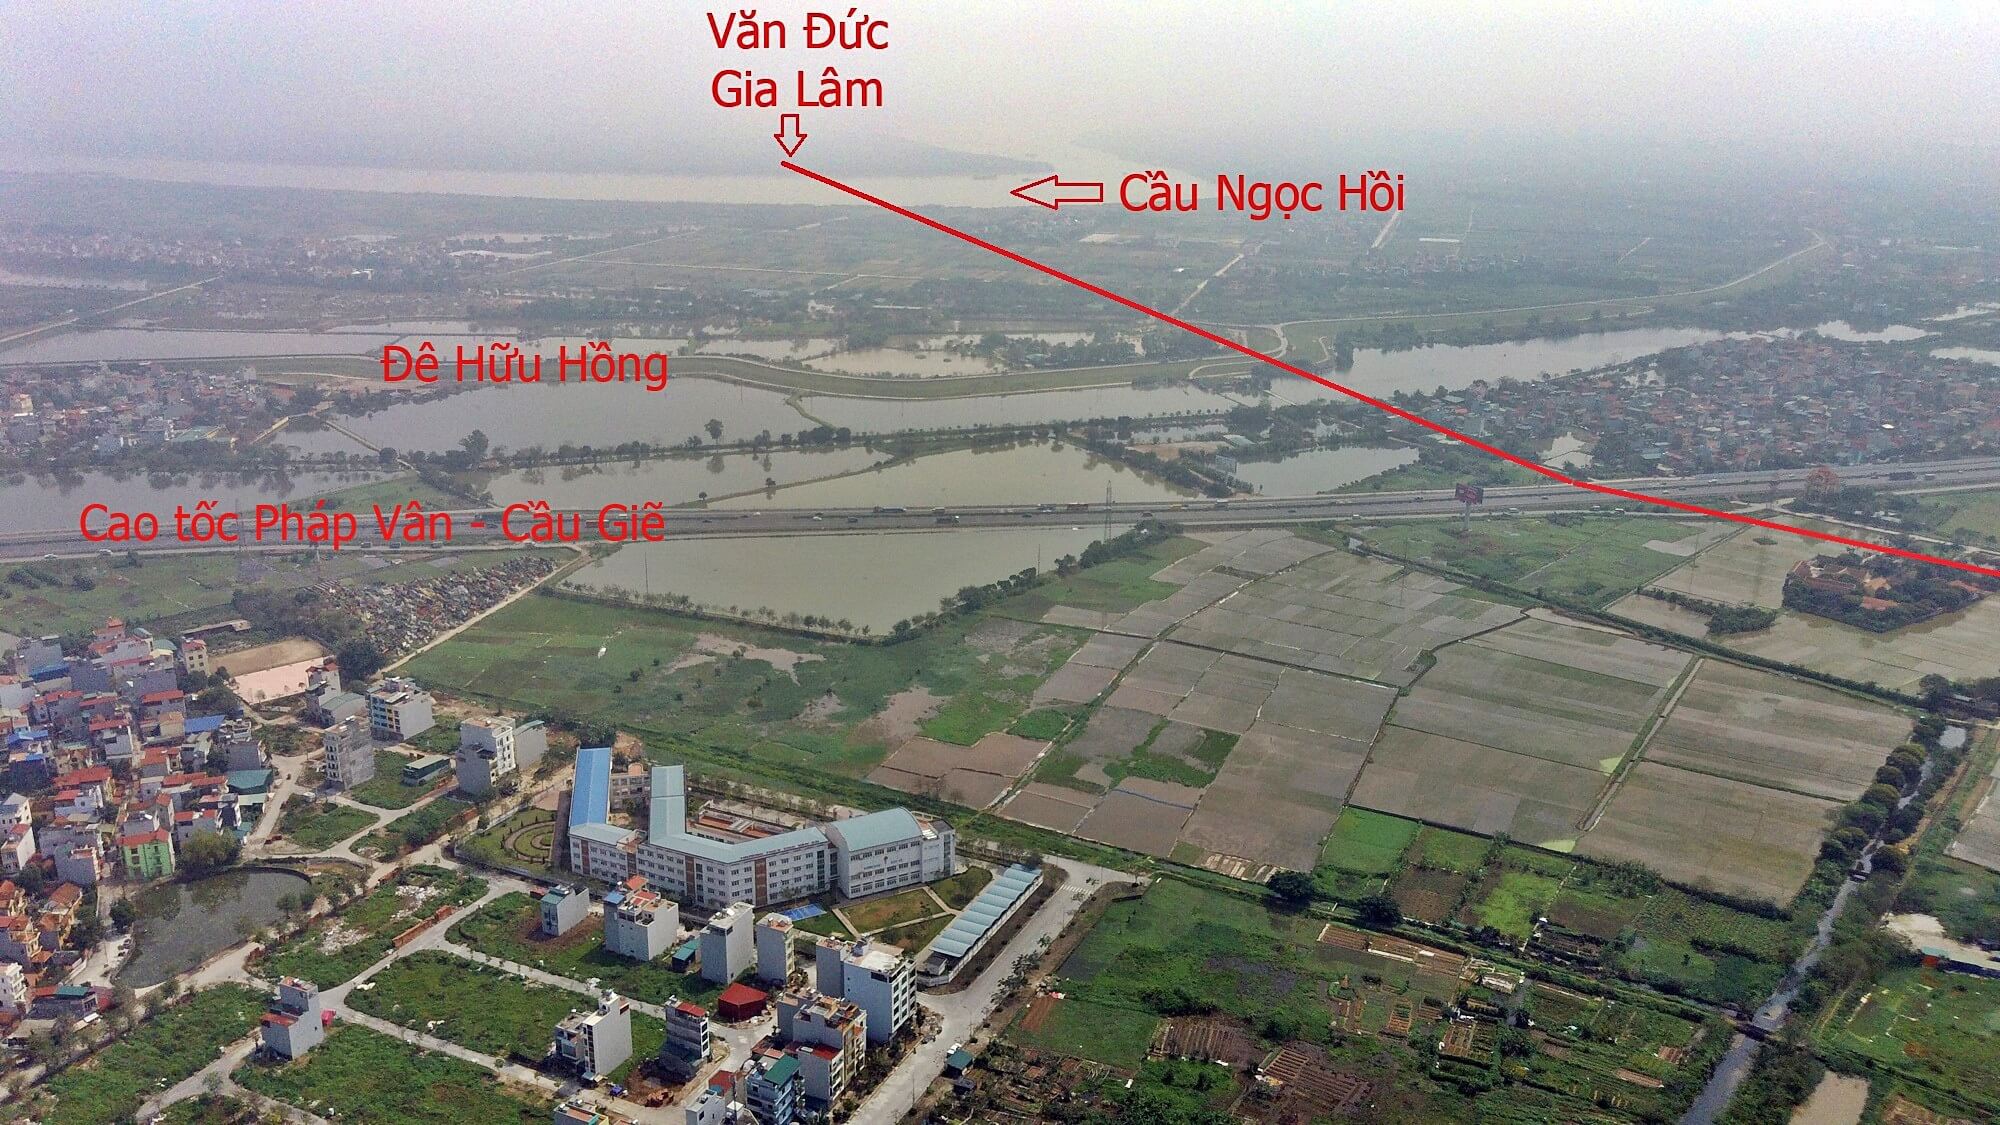 Theo bản đồ quy hoạch, vị trí 2 đầu cầu Ngọc Hồi nằm trên địa bàn huyện Thanh Trì và xã Văn Đức - Gia Lâm.